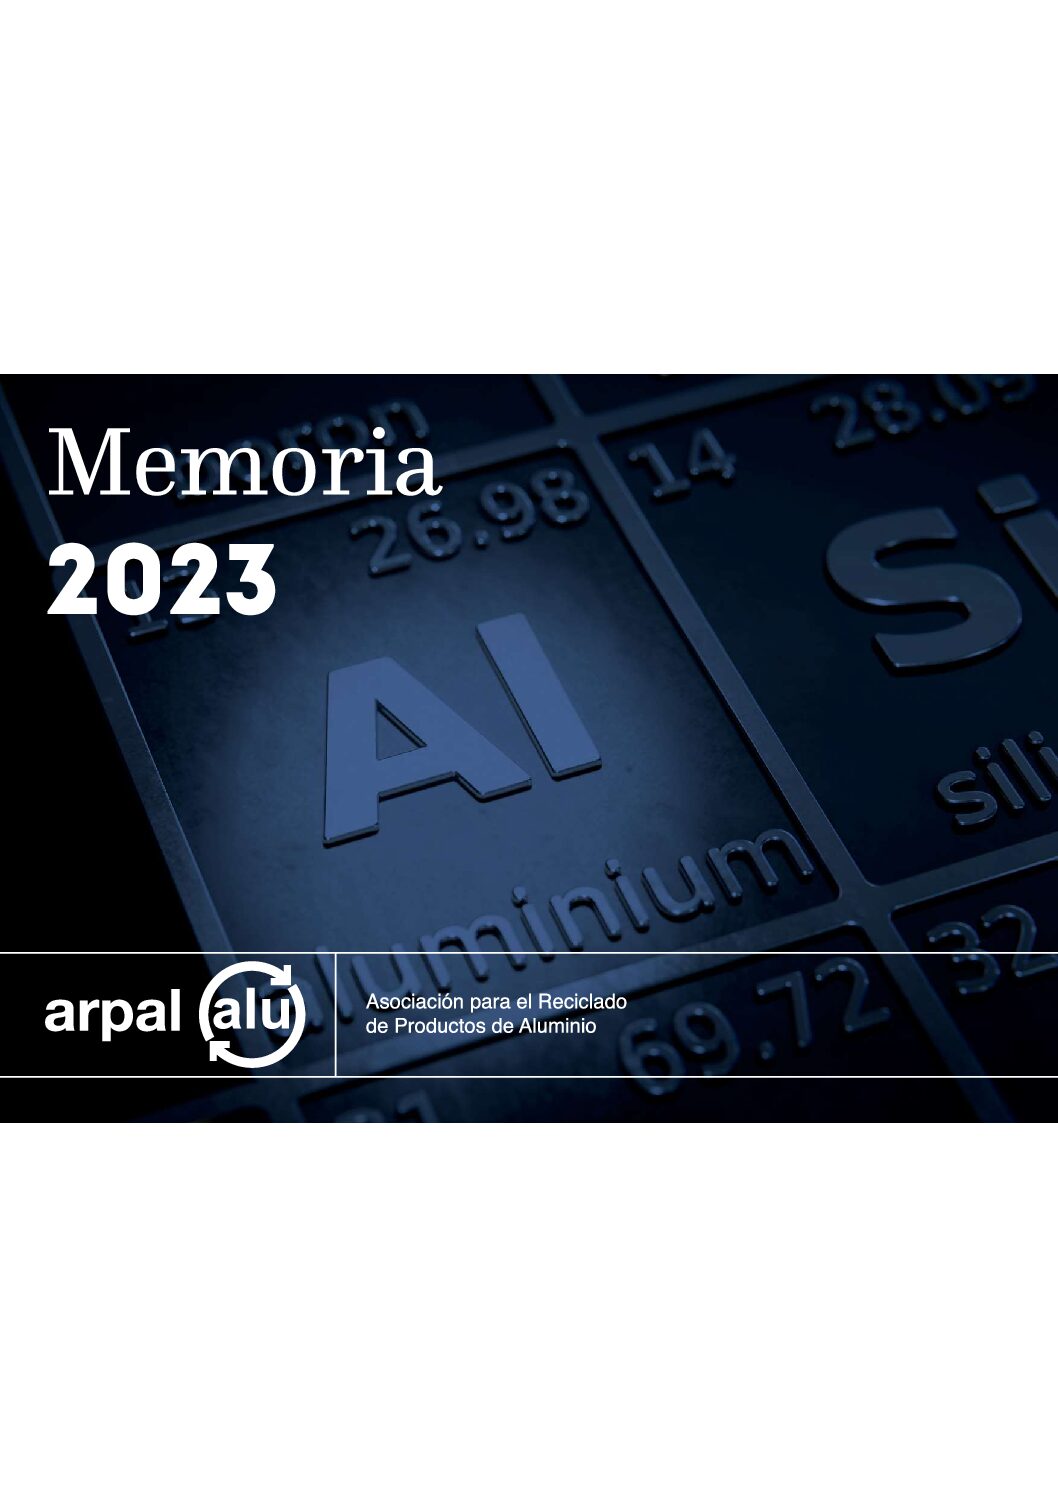 ARPAL DIFUNDE SU MEMORIA DE ACTIVIDADES 2023